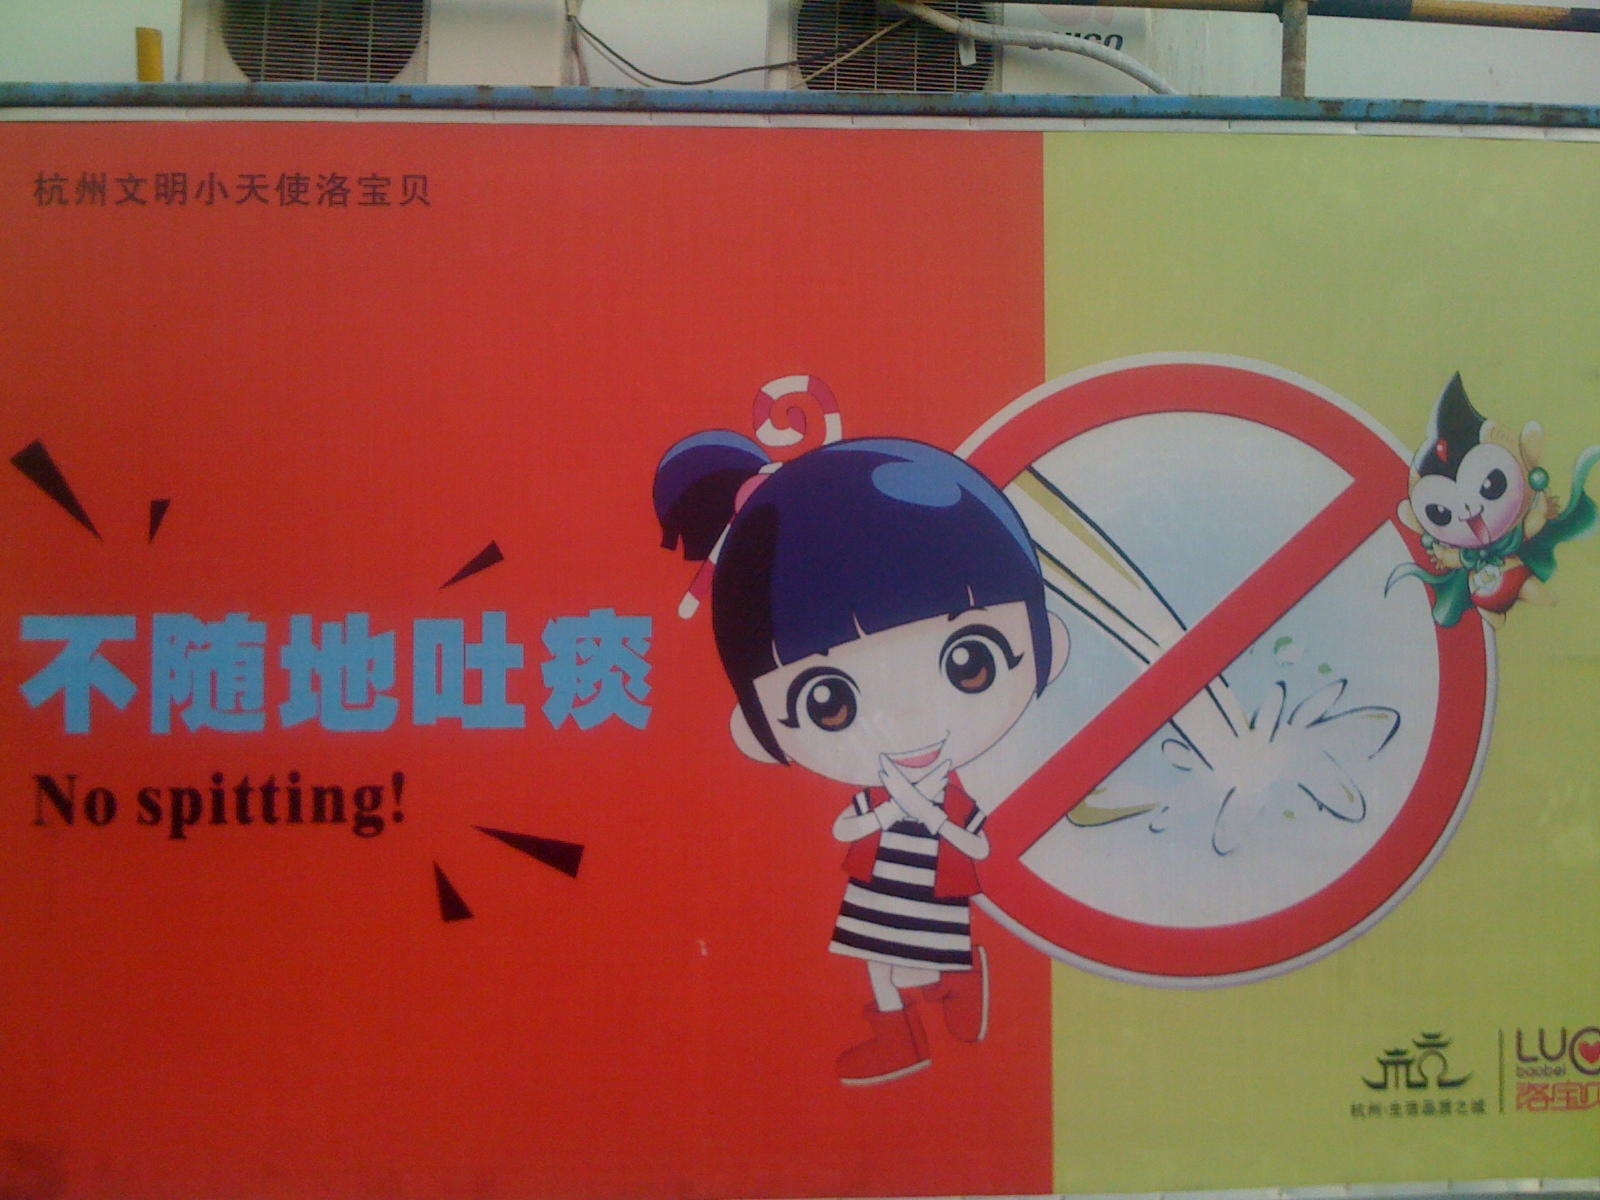 Nie pluj! - Plakat w Hangzhou propagujący właściwe zachowanie